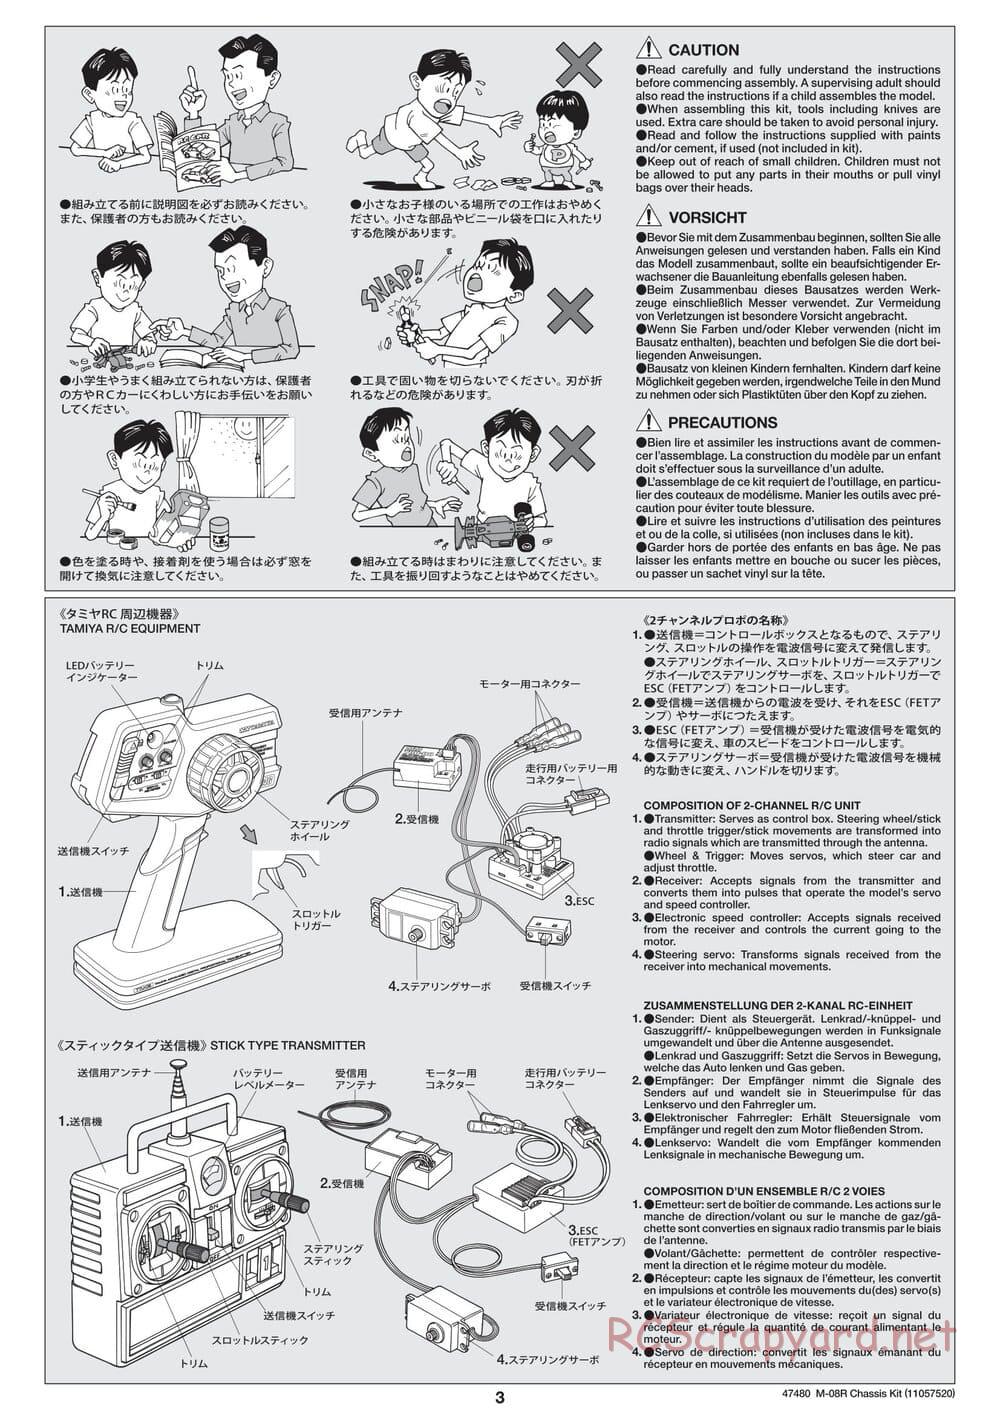 Tamiya - M-08R Chassis - Manual - Page 3